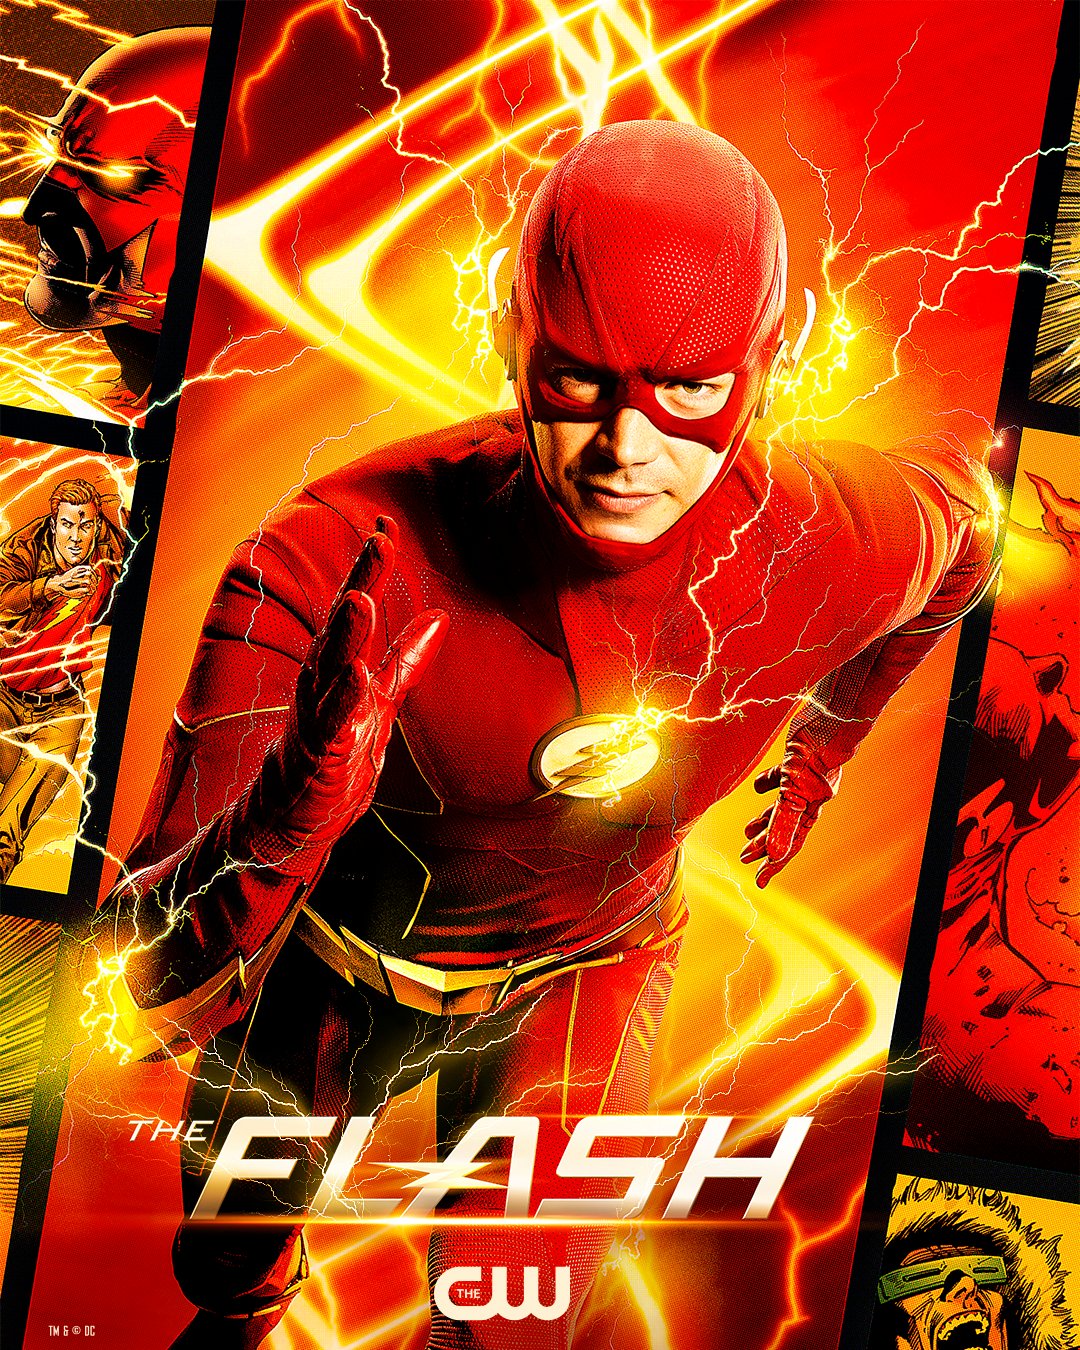 Bande annonce et posters de la saison 7 de The Flash – The Flash France